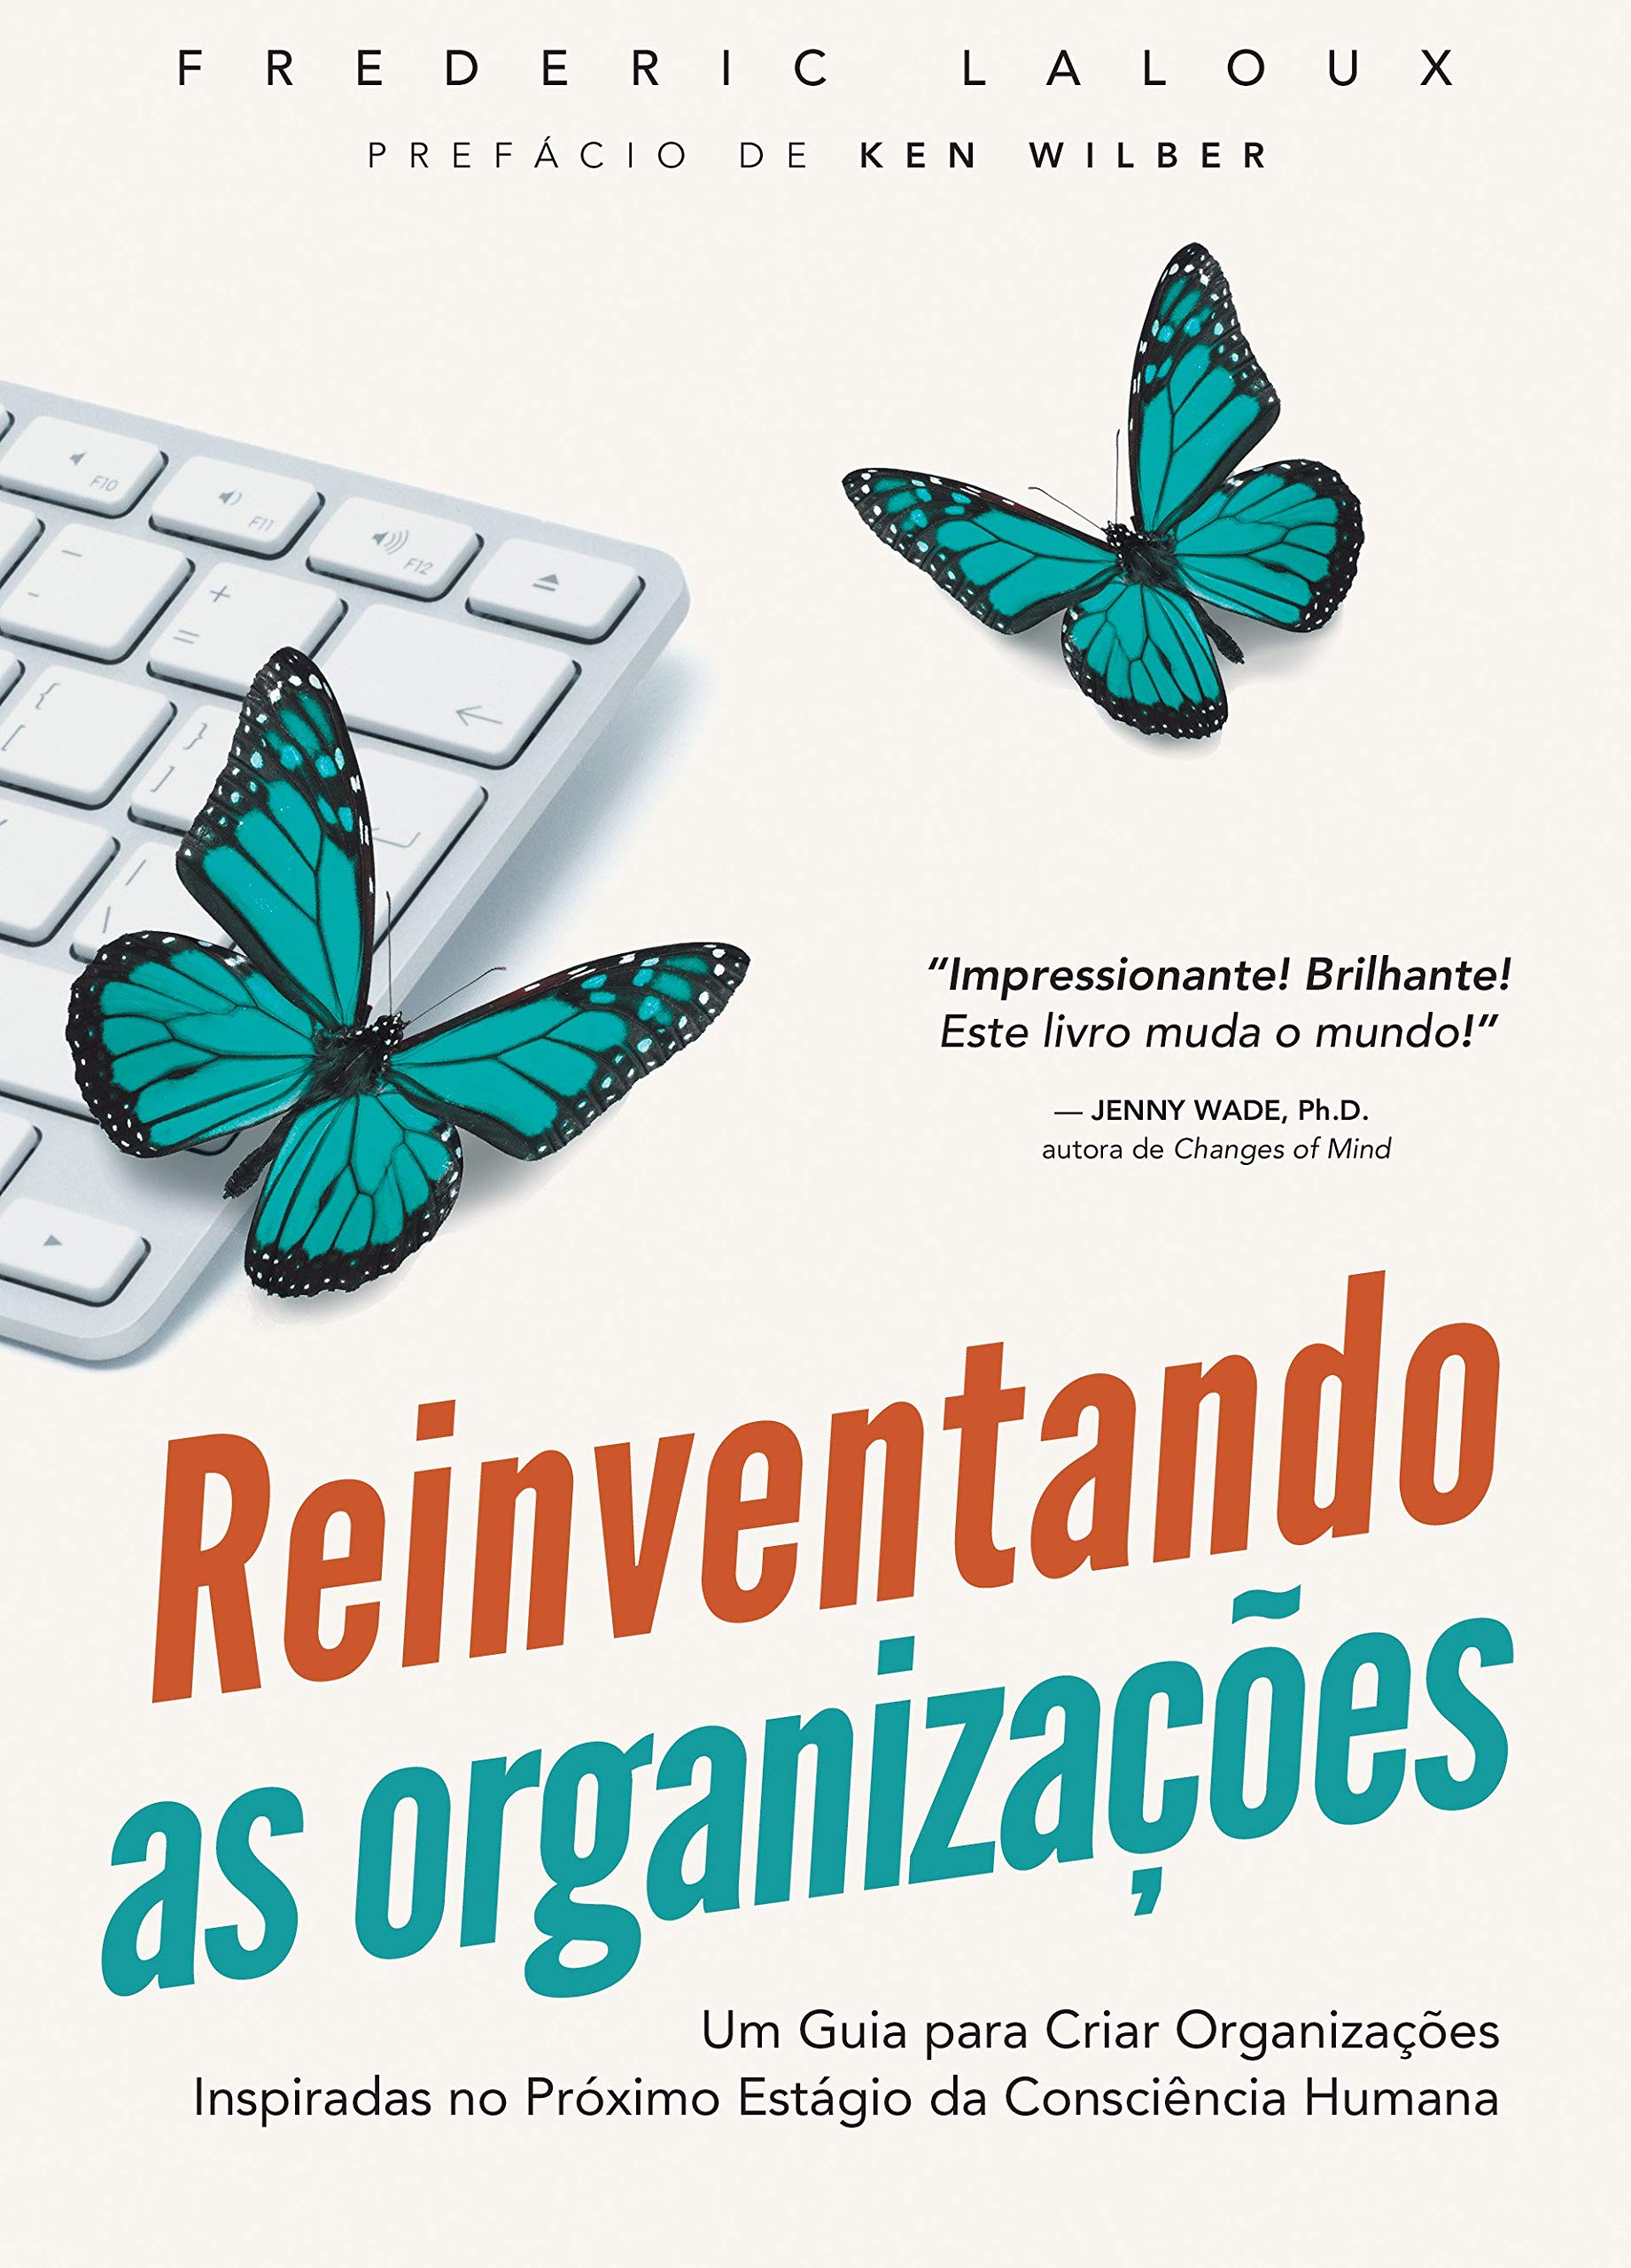 Capa do livro "Reinventando as organizações", de Frederic Laloux.